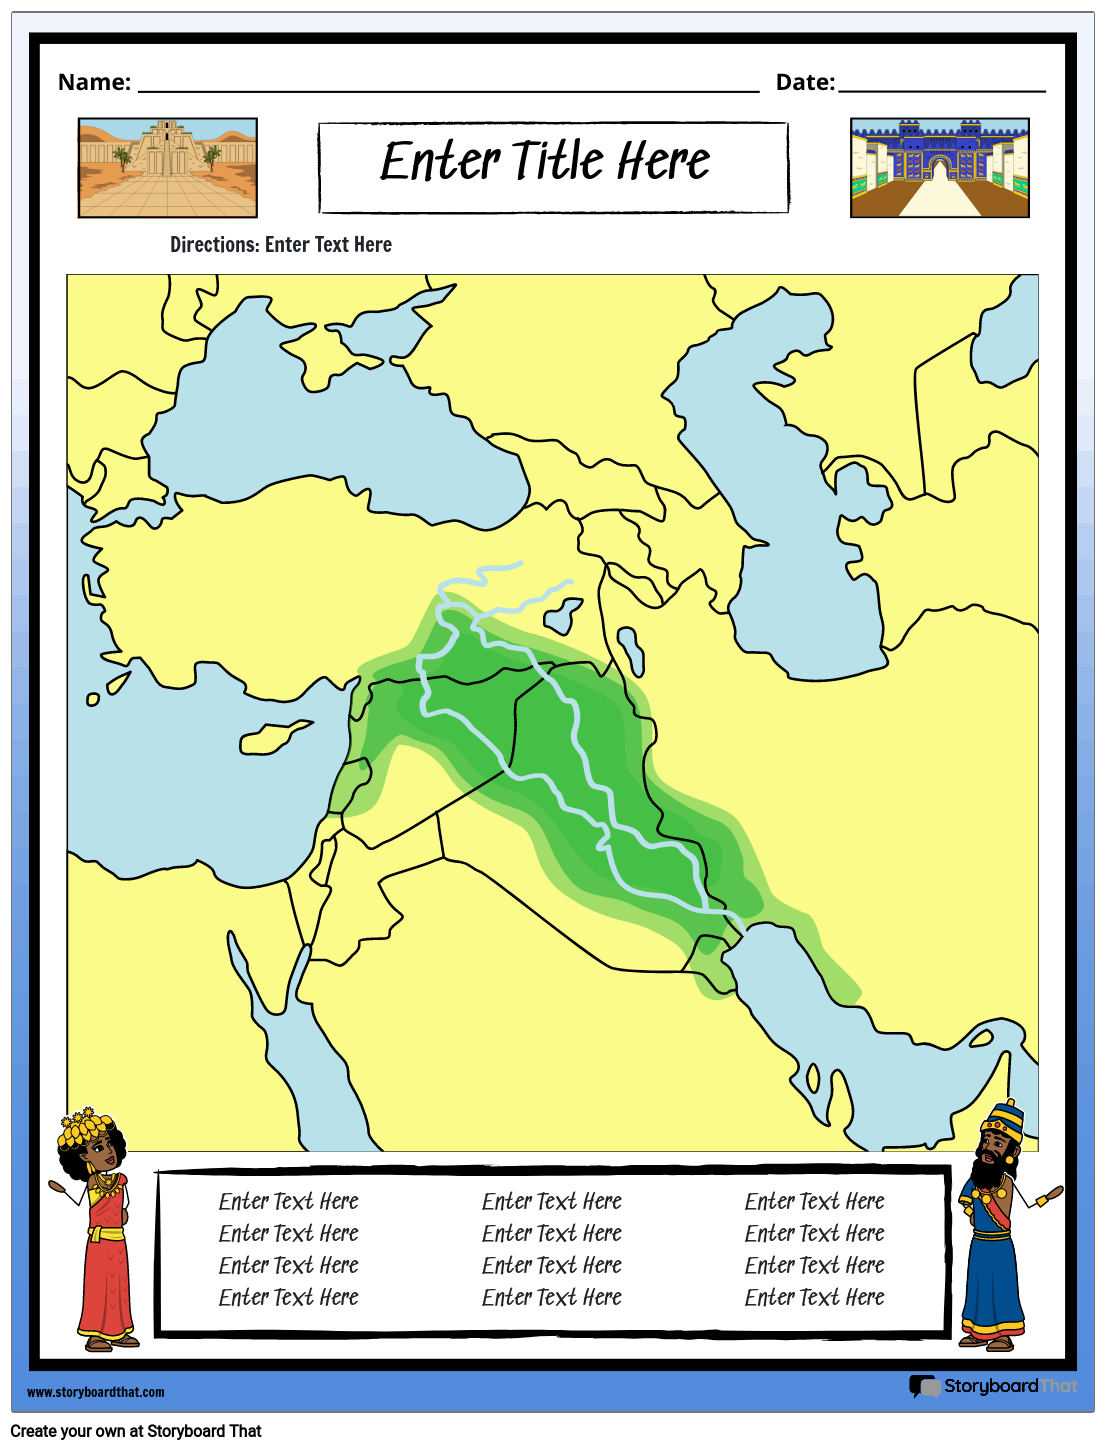 mesopotamia map for kids